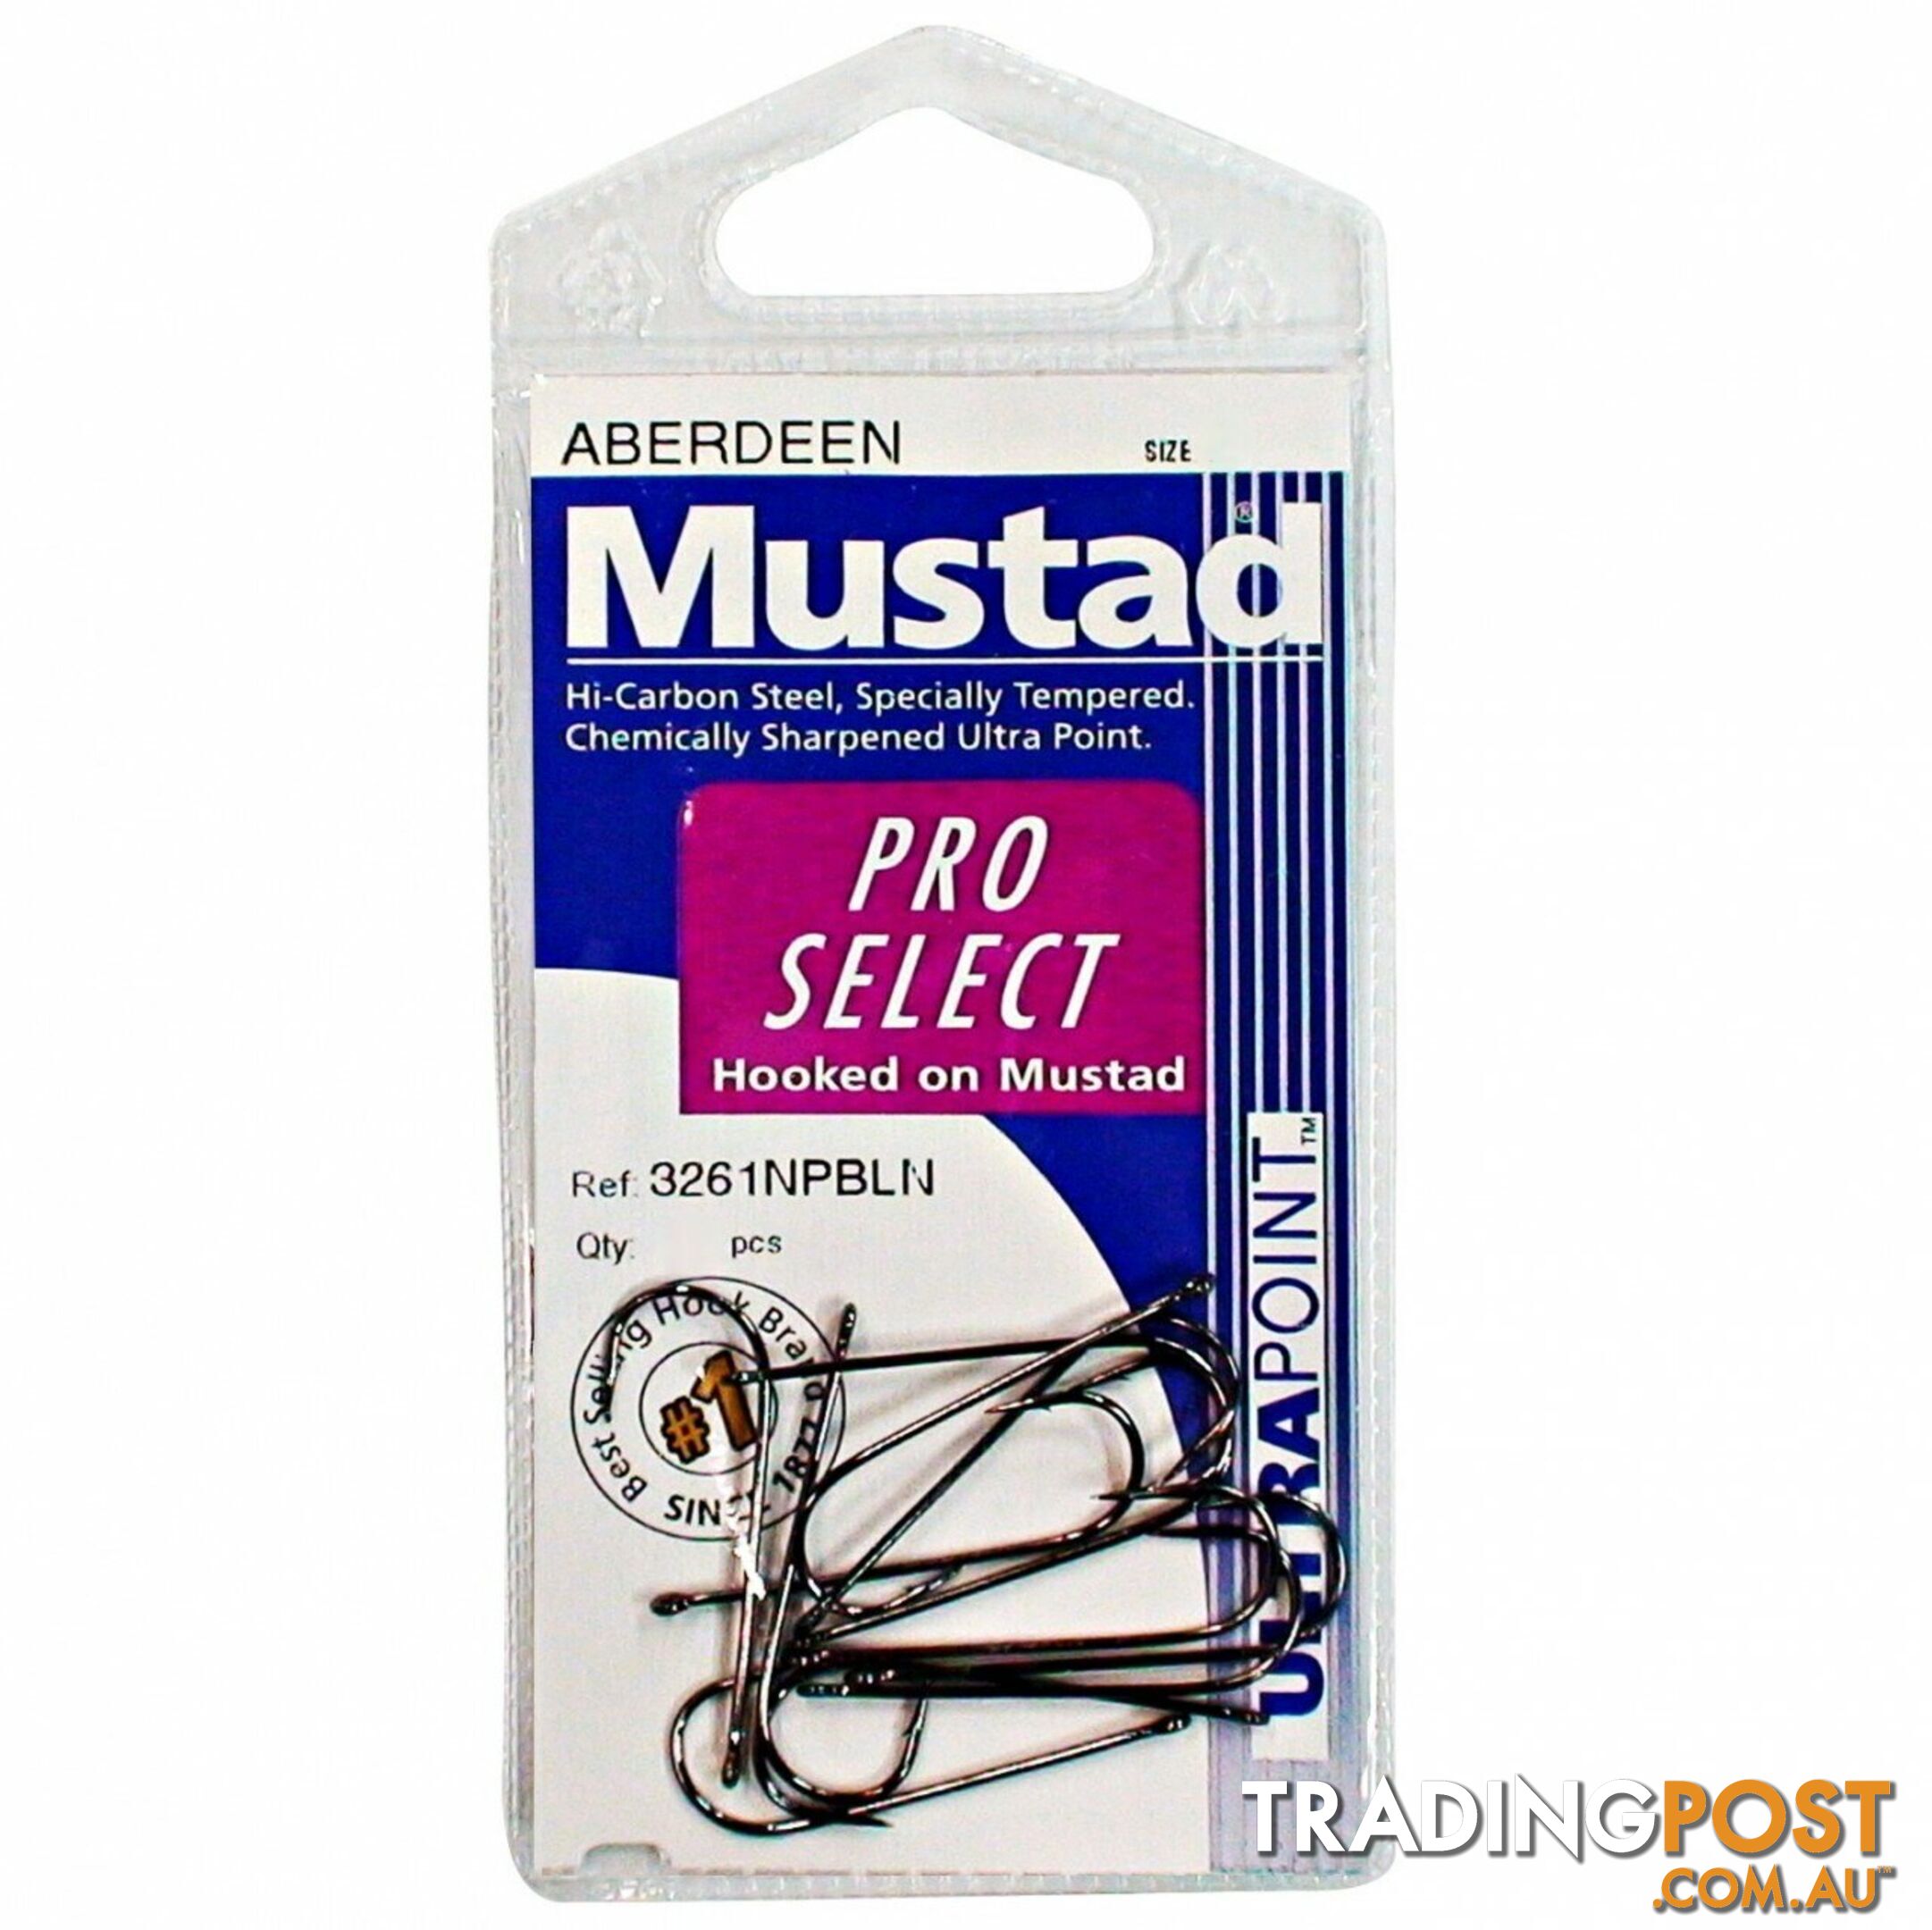 Mustad Aberdeen Fishing Hooks single Pack - ABERDEEN - Mustad Hooks